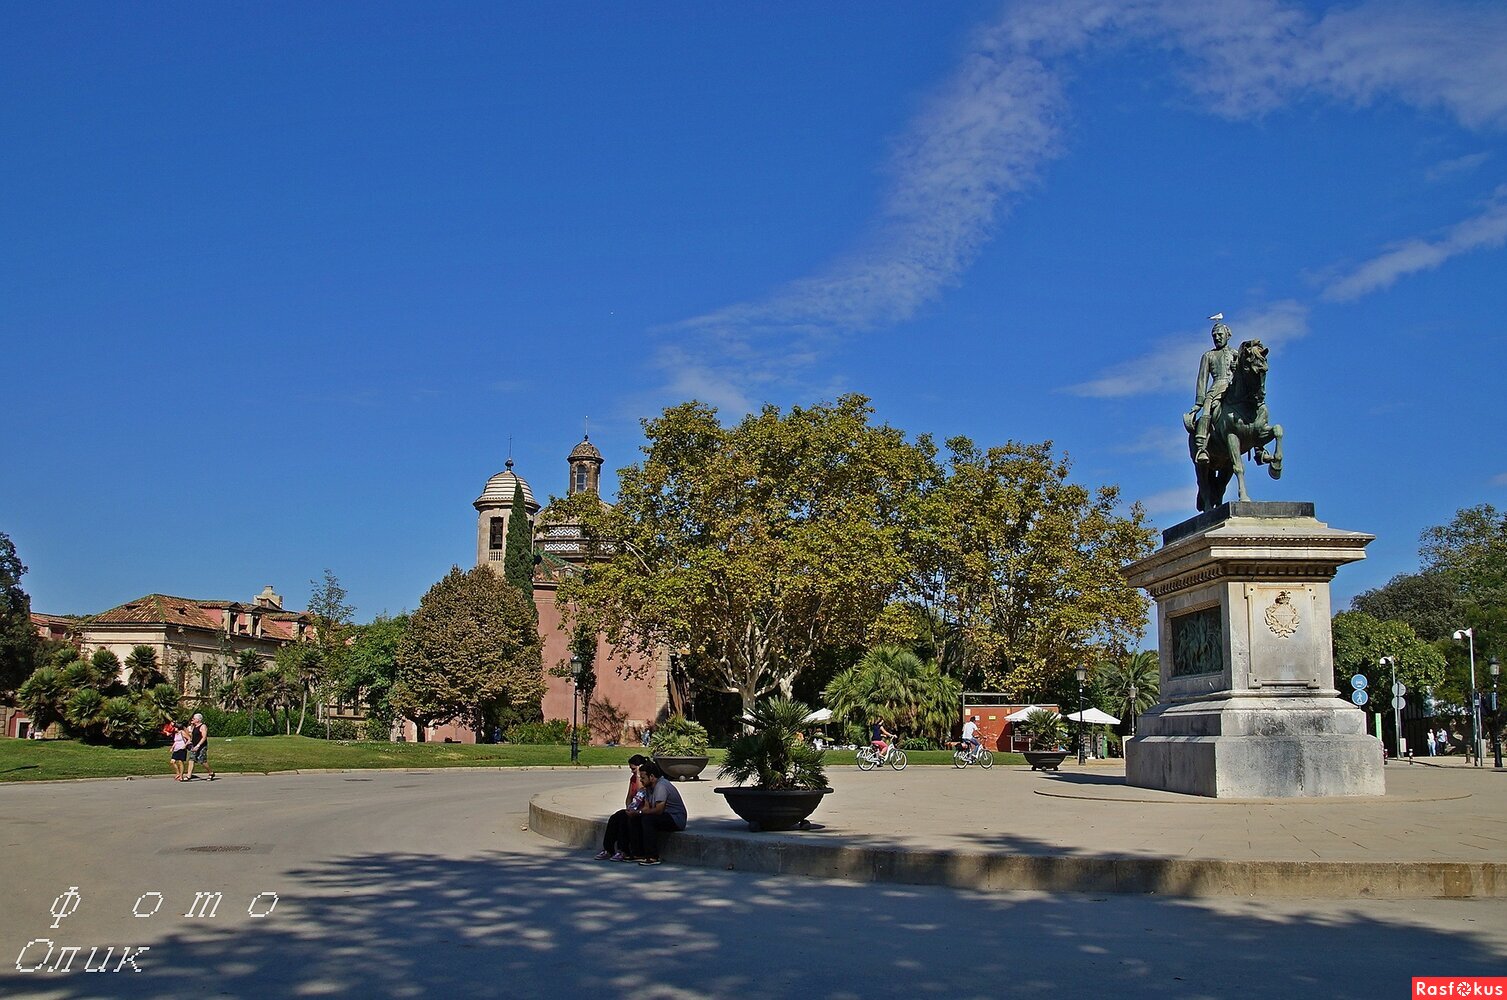 Памятник генералу Приму.Парк Сьютаделла. Барселона.Испания.(+ фото в комменте